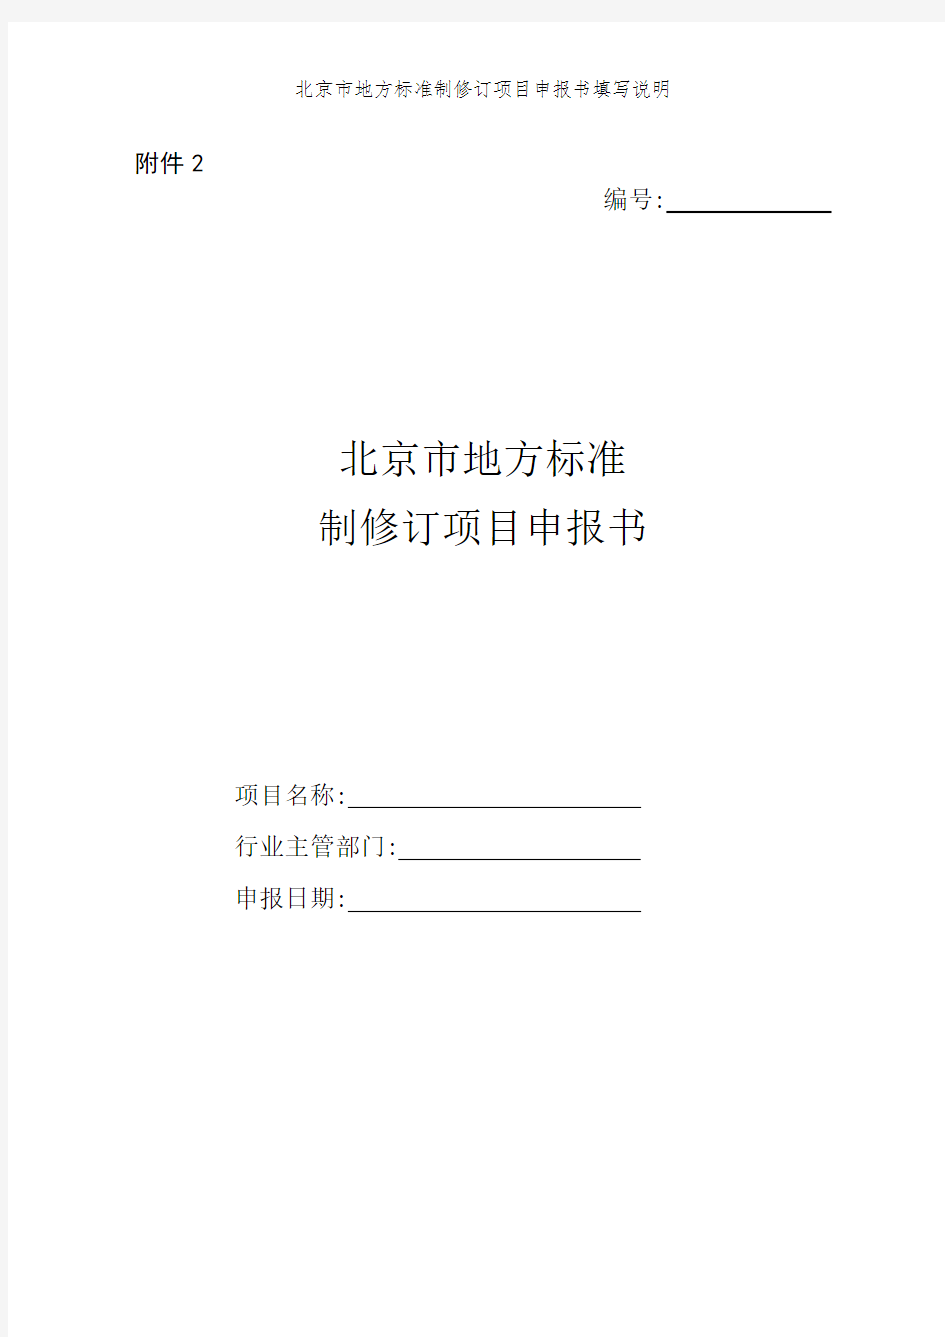 北京市地方标准制修订项目申报书填写说明